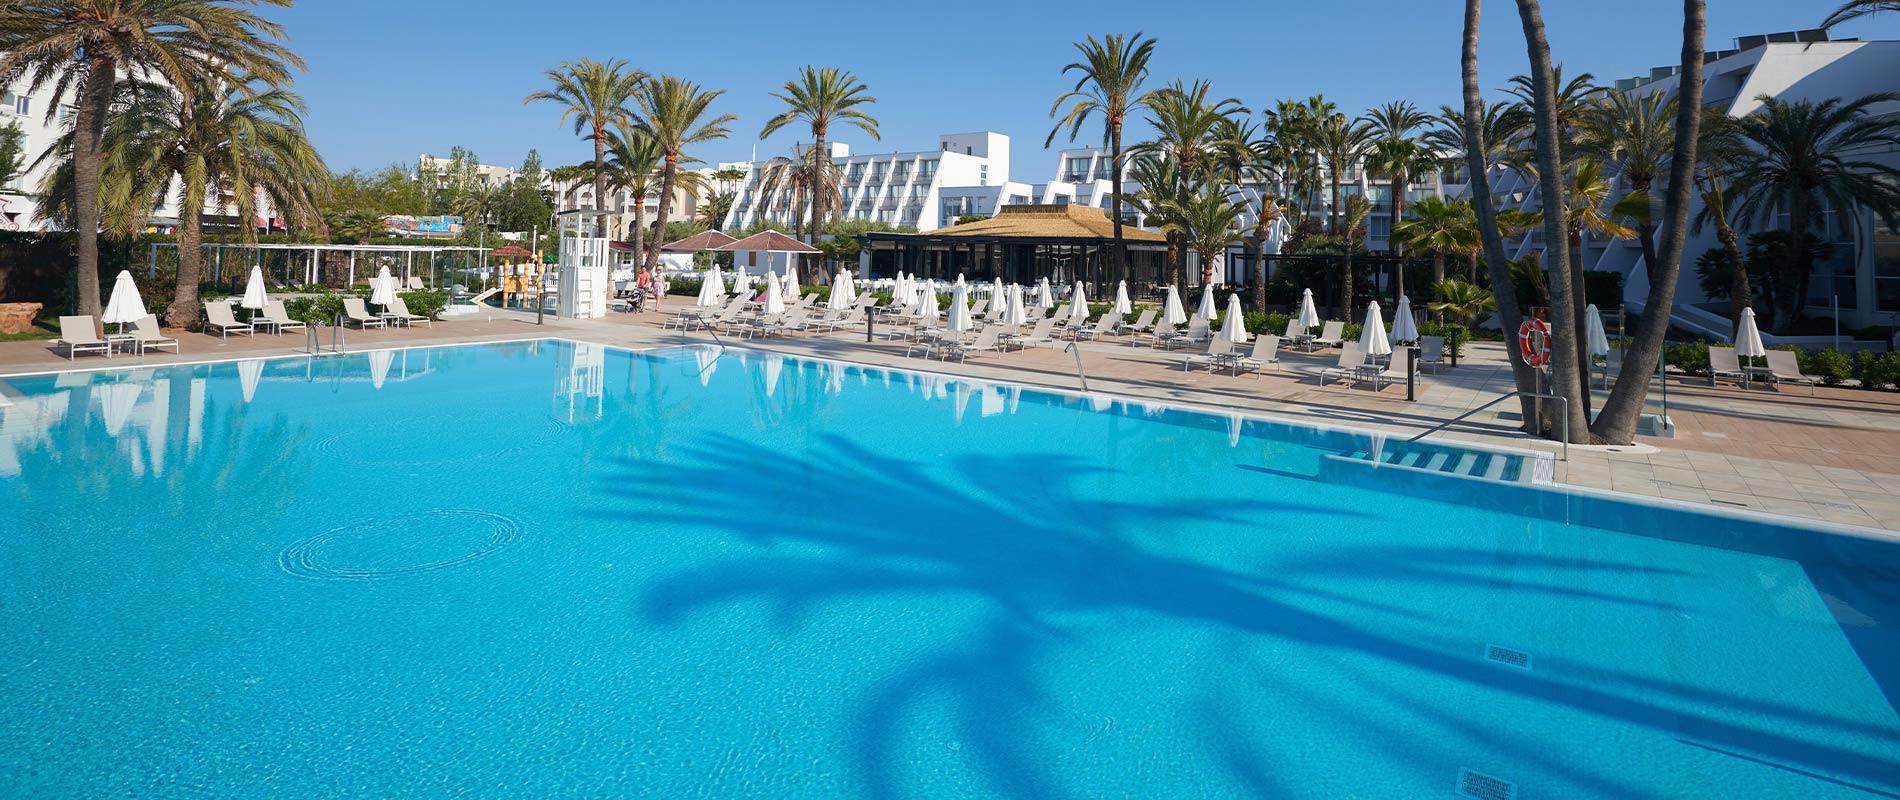 Protur Sa Coma Playa Hotel & Spa - 4 Estrellas - Sa Coma, Mallorca